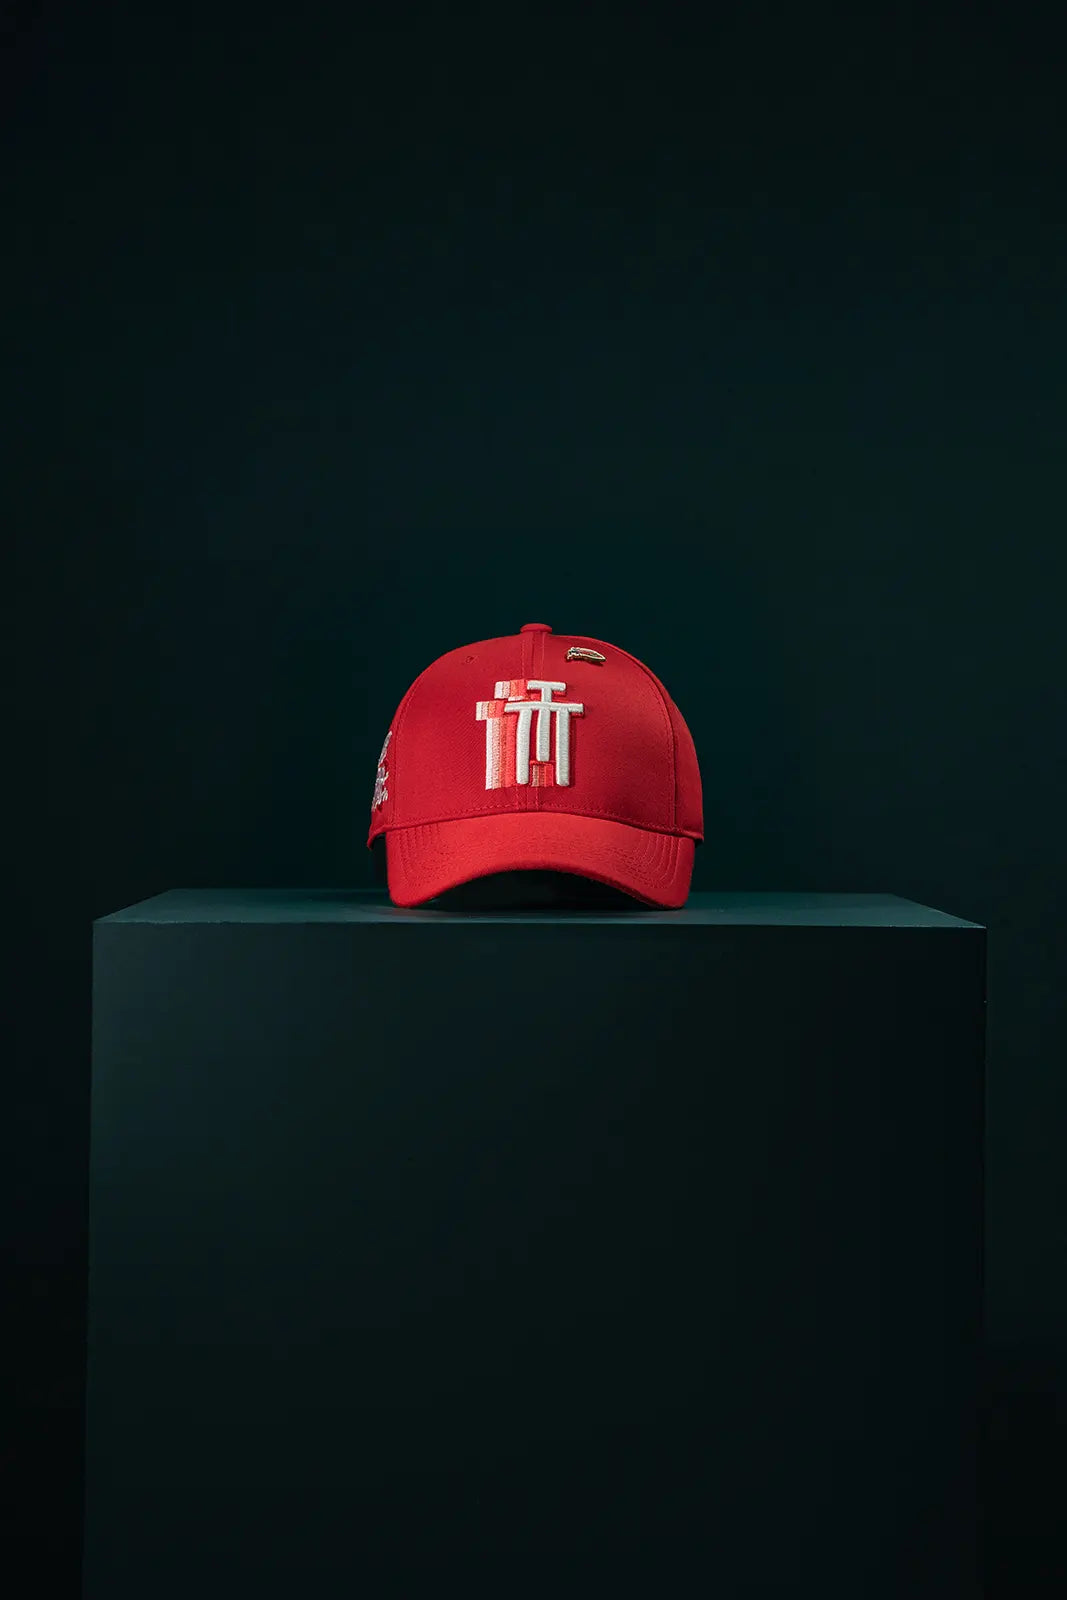 RUBRUM Modern Crown Red cap